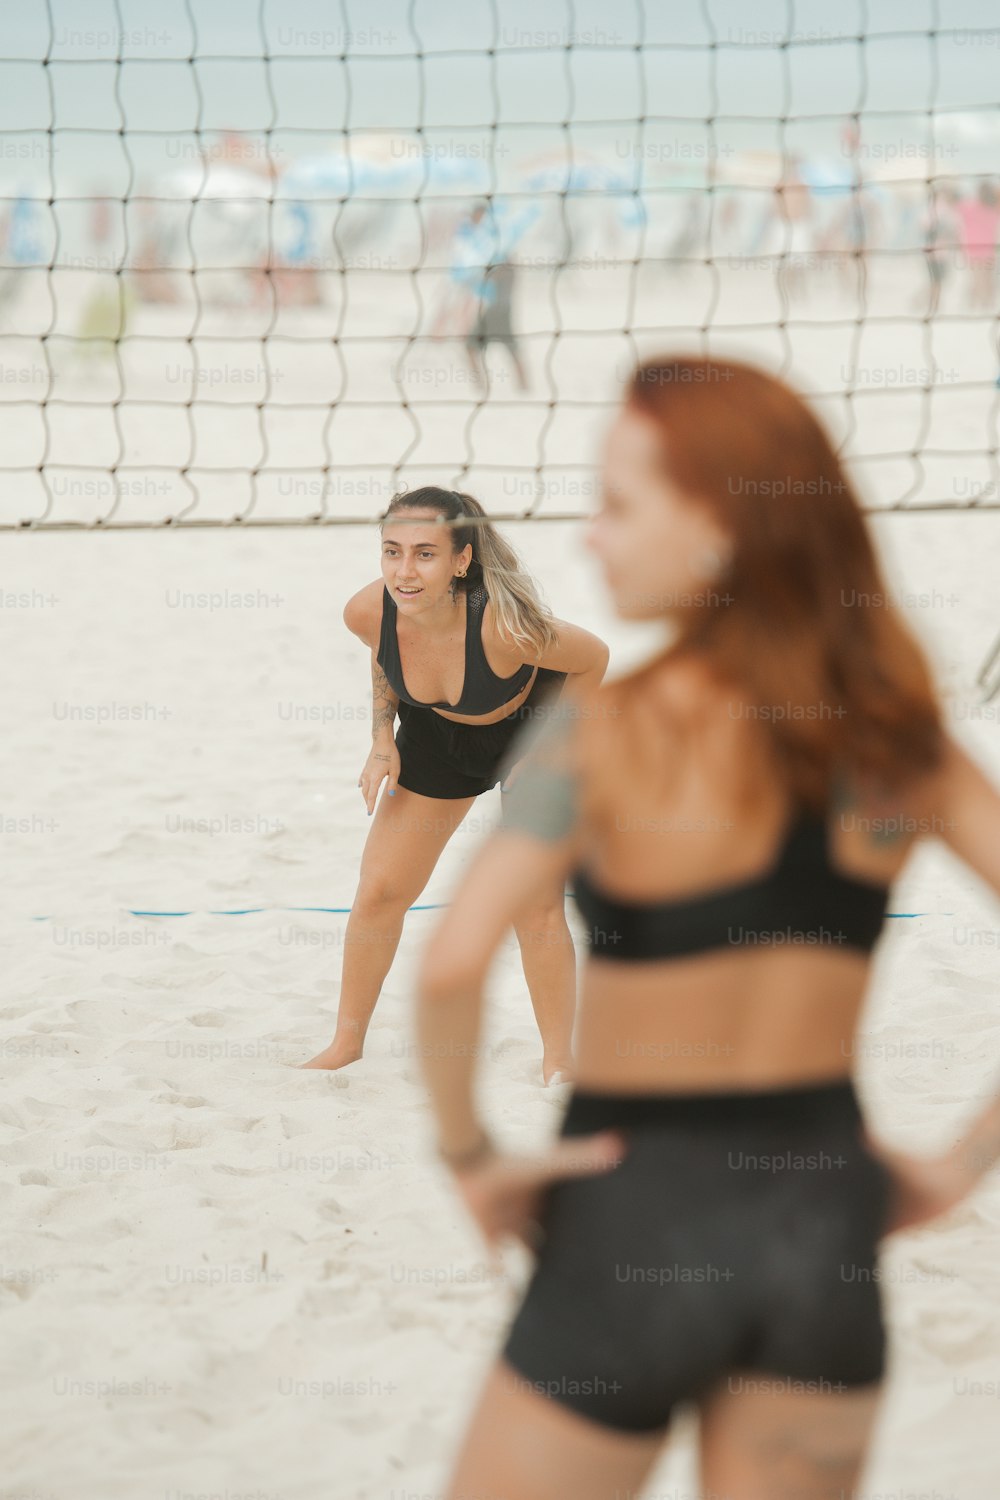 バレーボールネットの隣のビーチに立つ女性